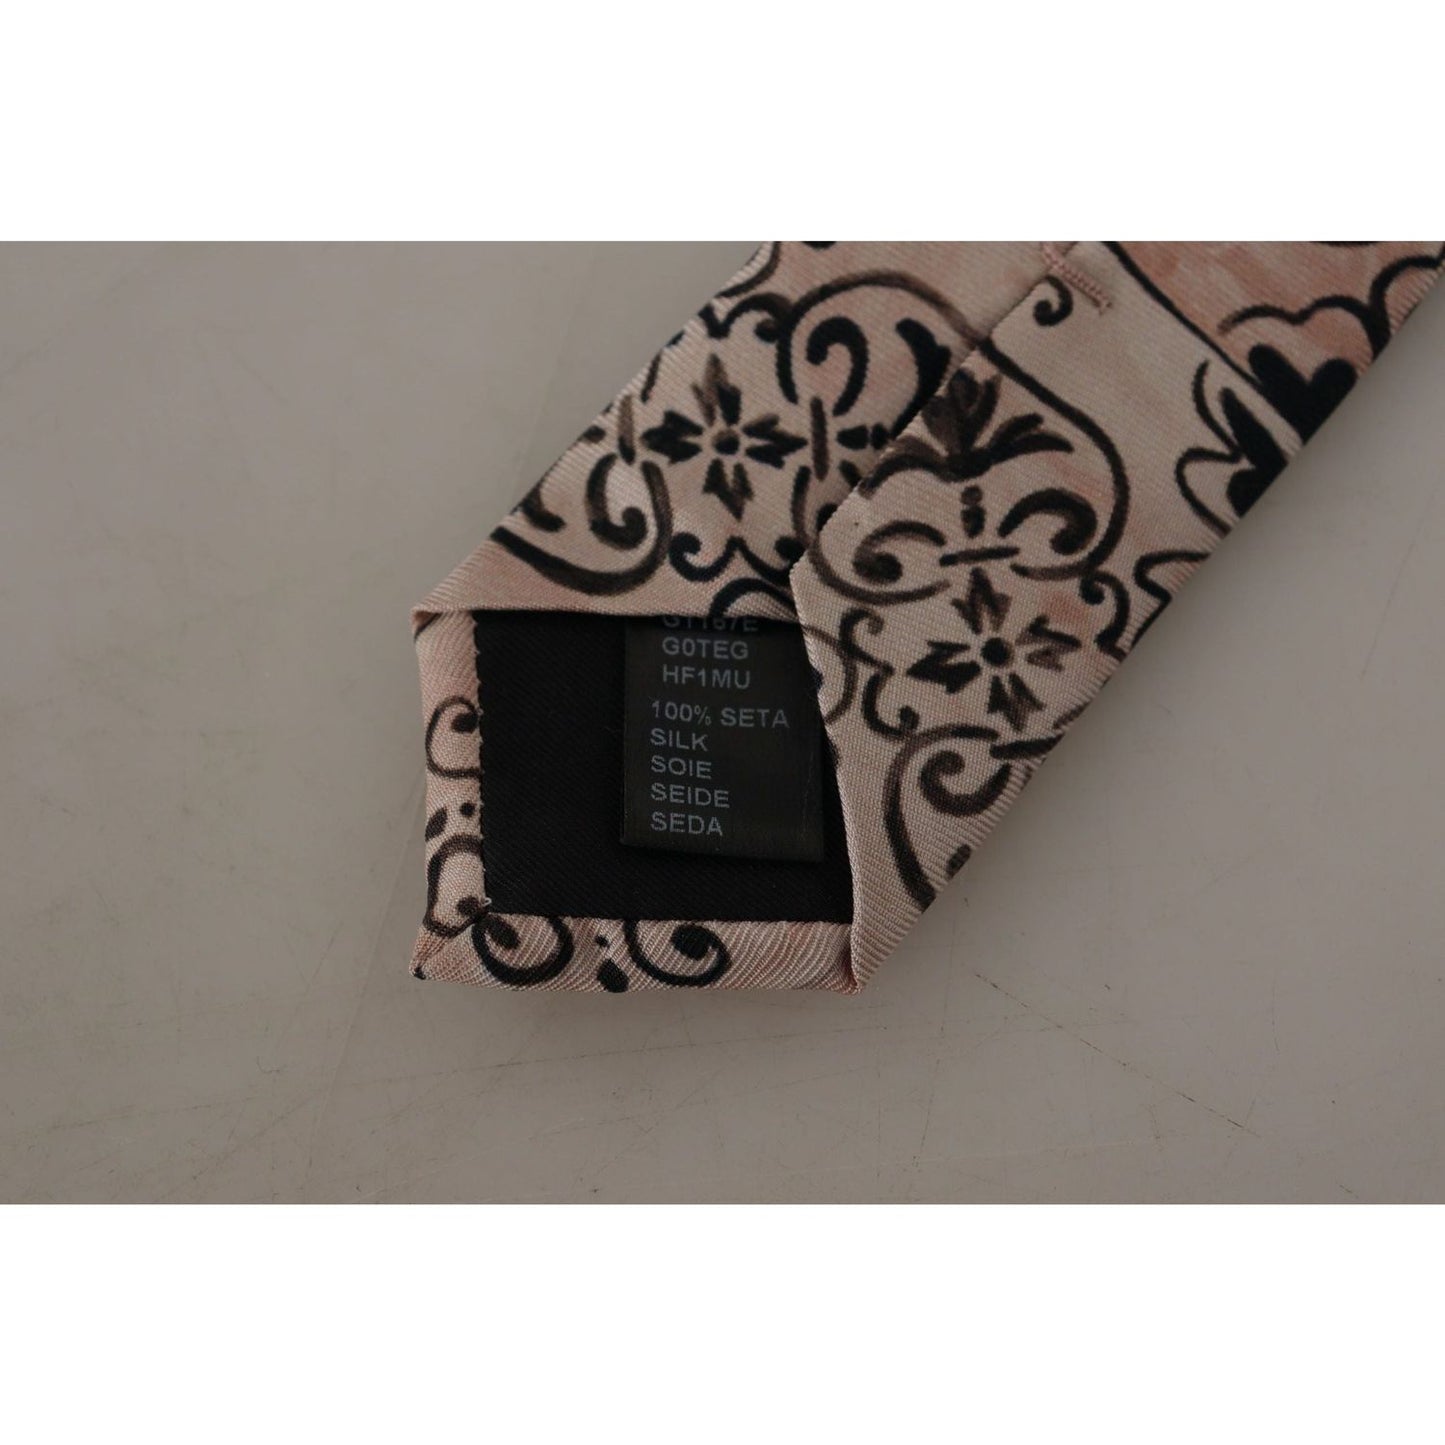 Dolce & Gabbana Stunning Silk Gentleman's Tie in Rich Brown beige-fantasy-pattern-necktie-accessory-black